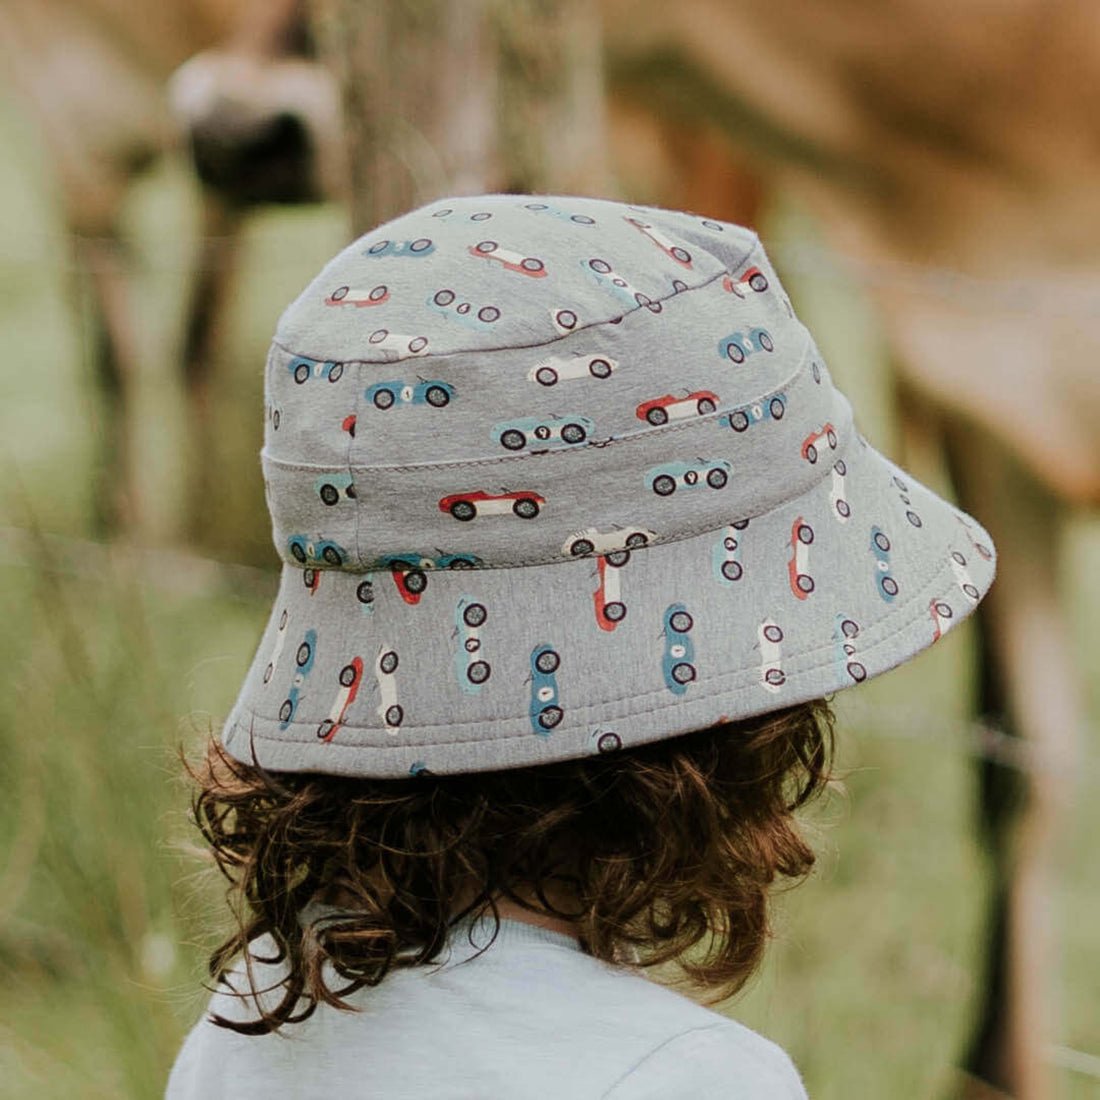 Bedhead Kids Bucket Hat Roadster | Bedhead Hats